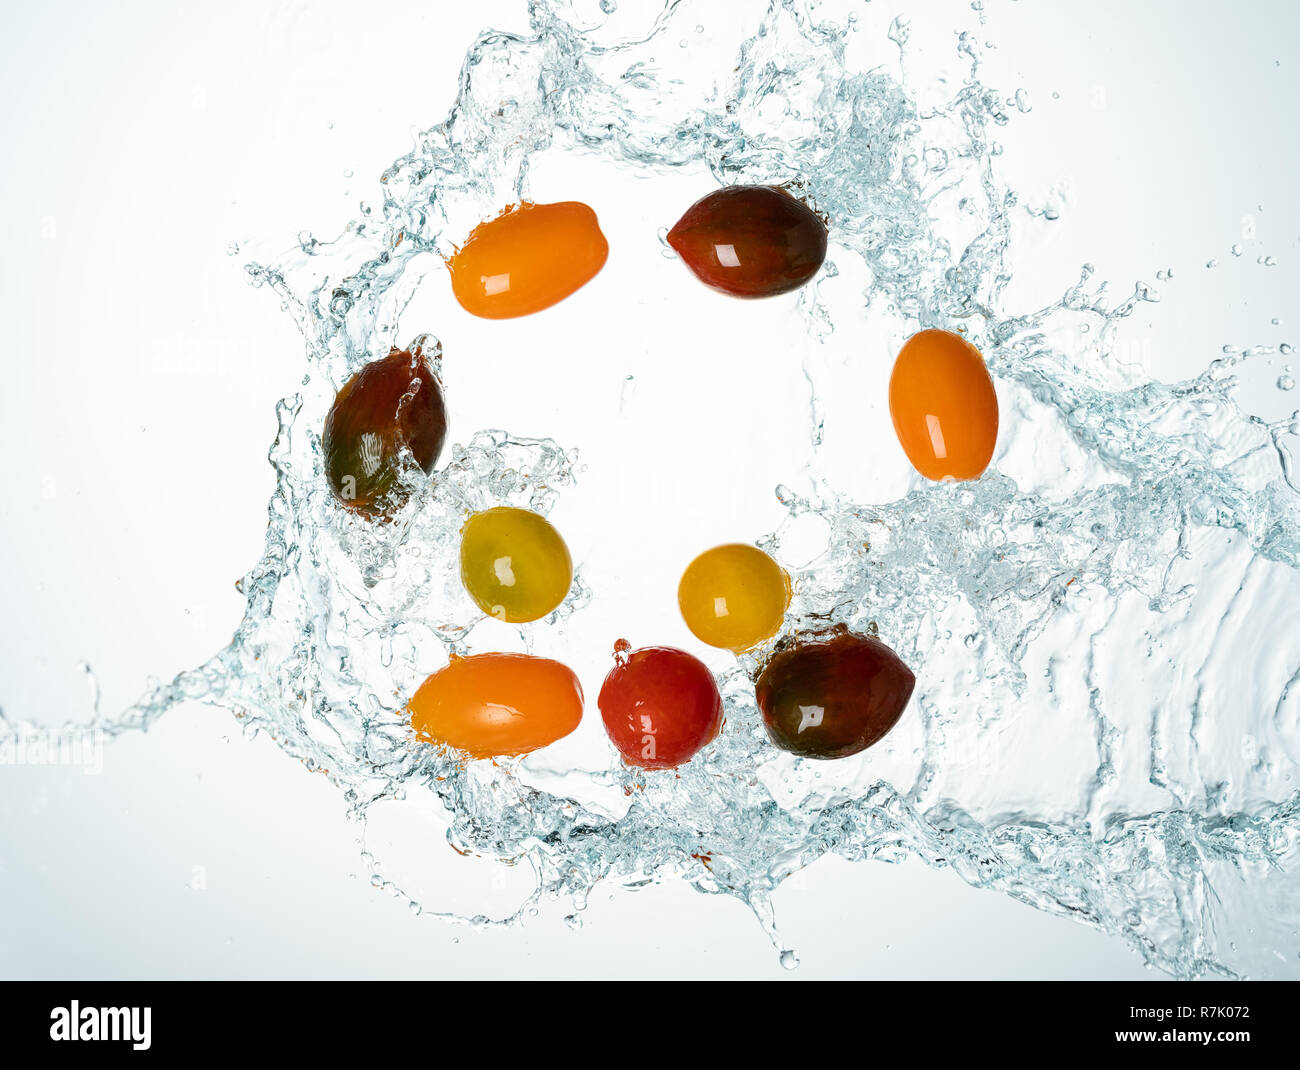 Congelare il movimento di pomodori ciliegia acqua splash Foto Stock